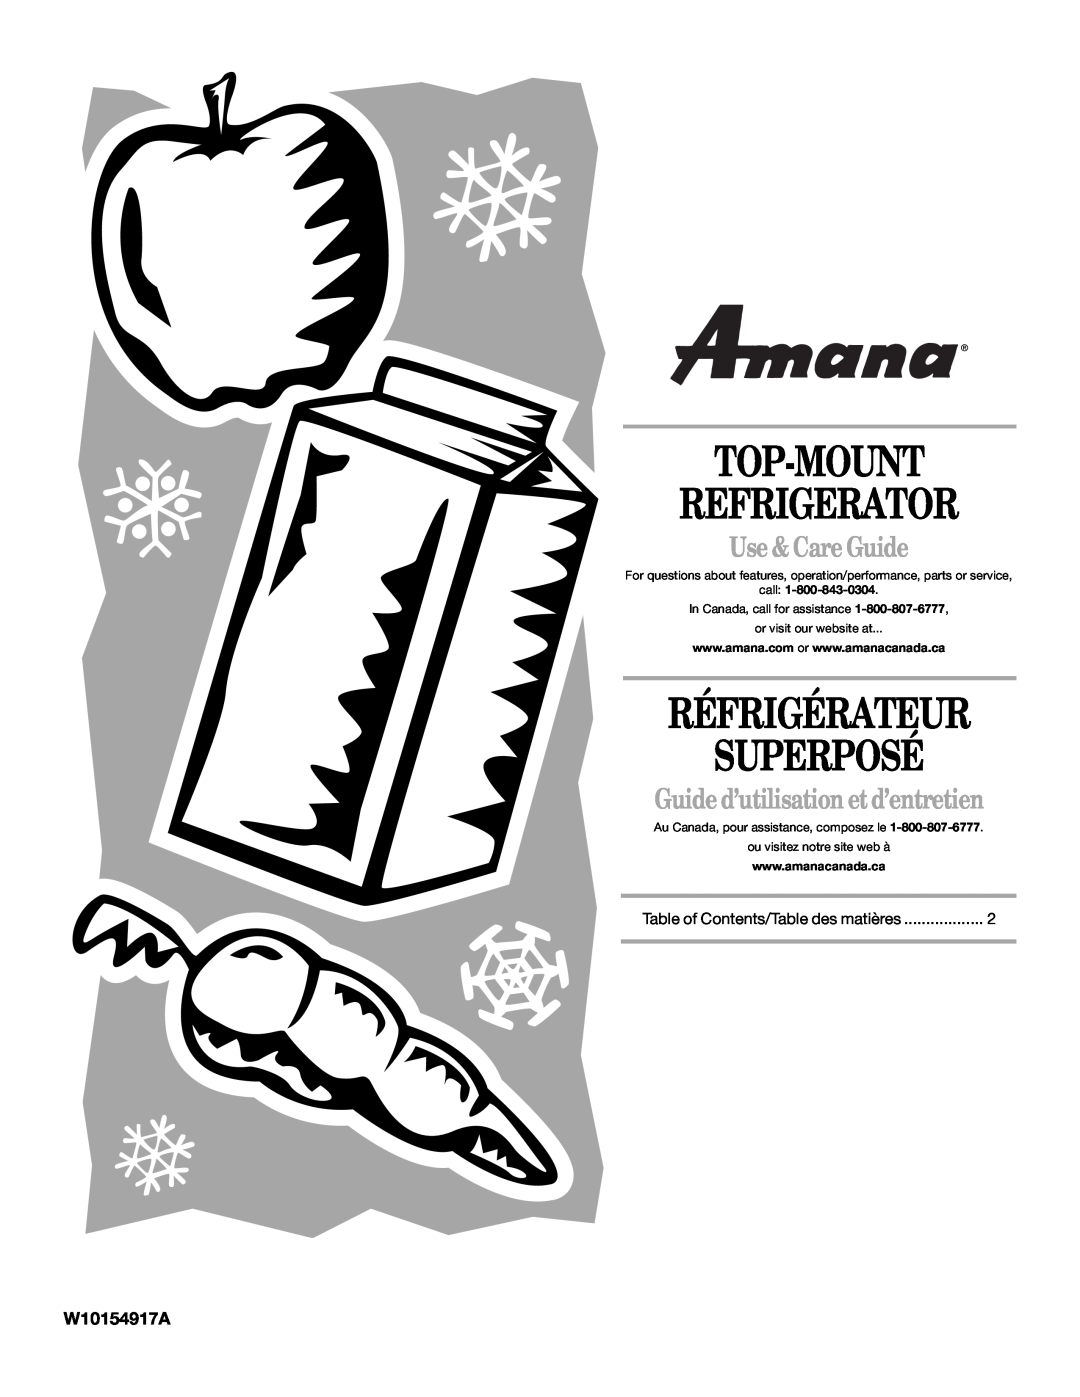 Amana W10154917A manual Top-Mount Refrigerator, Réfrigérateur Superposé, Use & Care Guide, call 